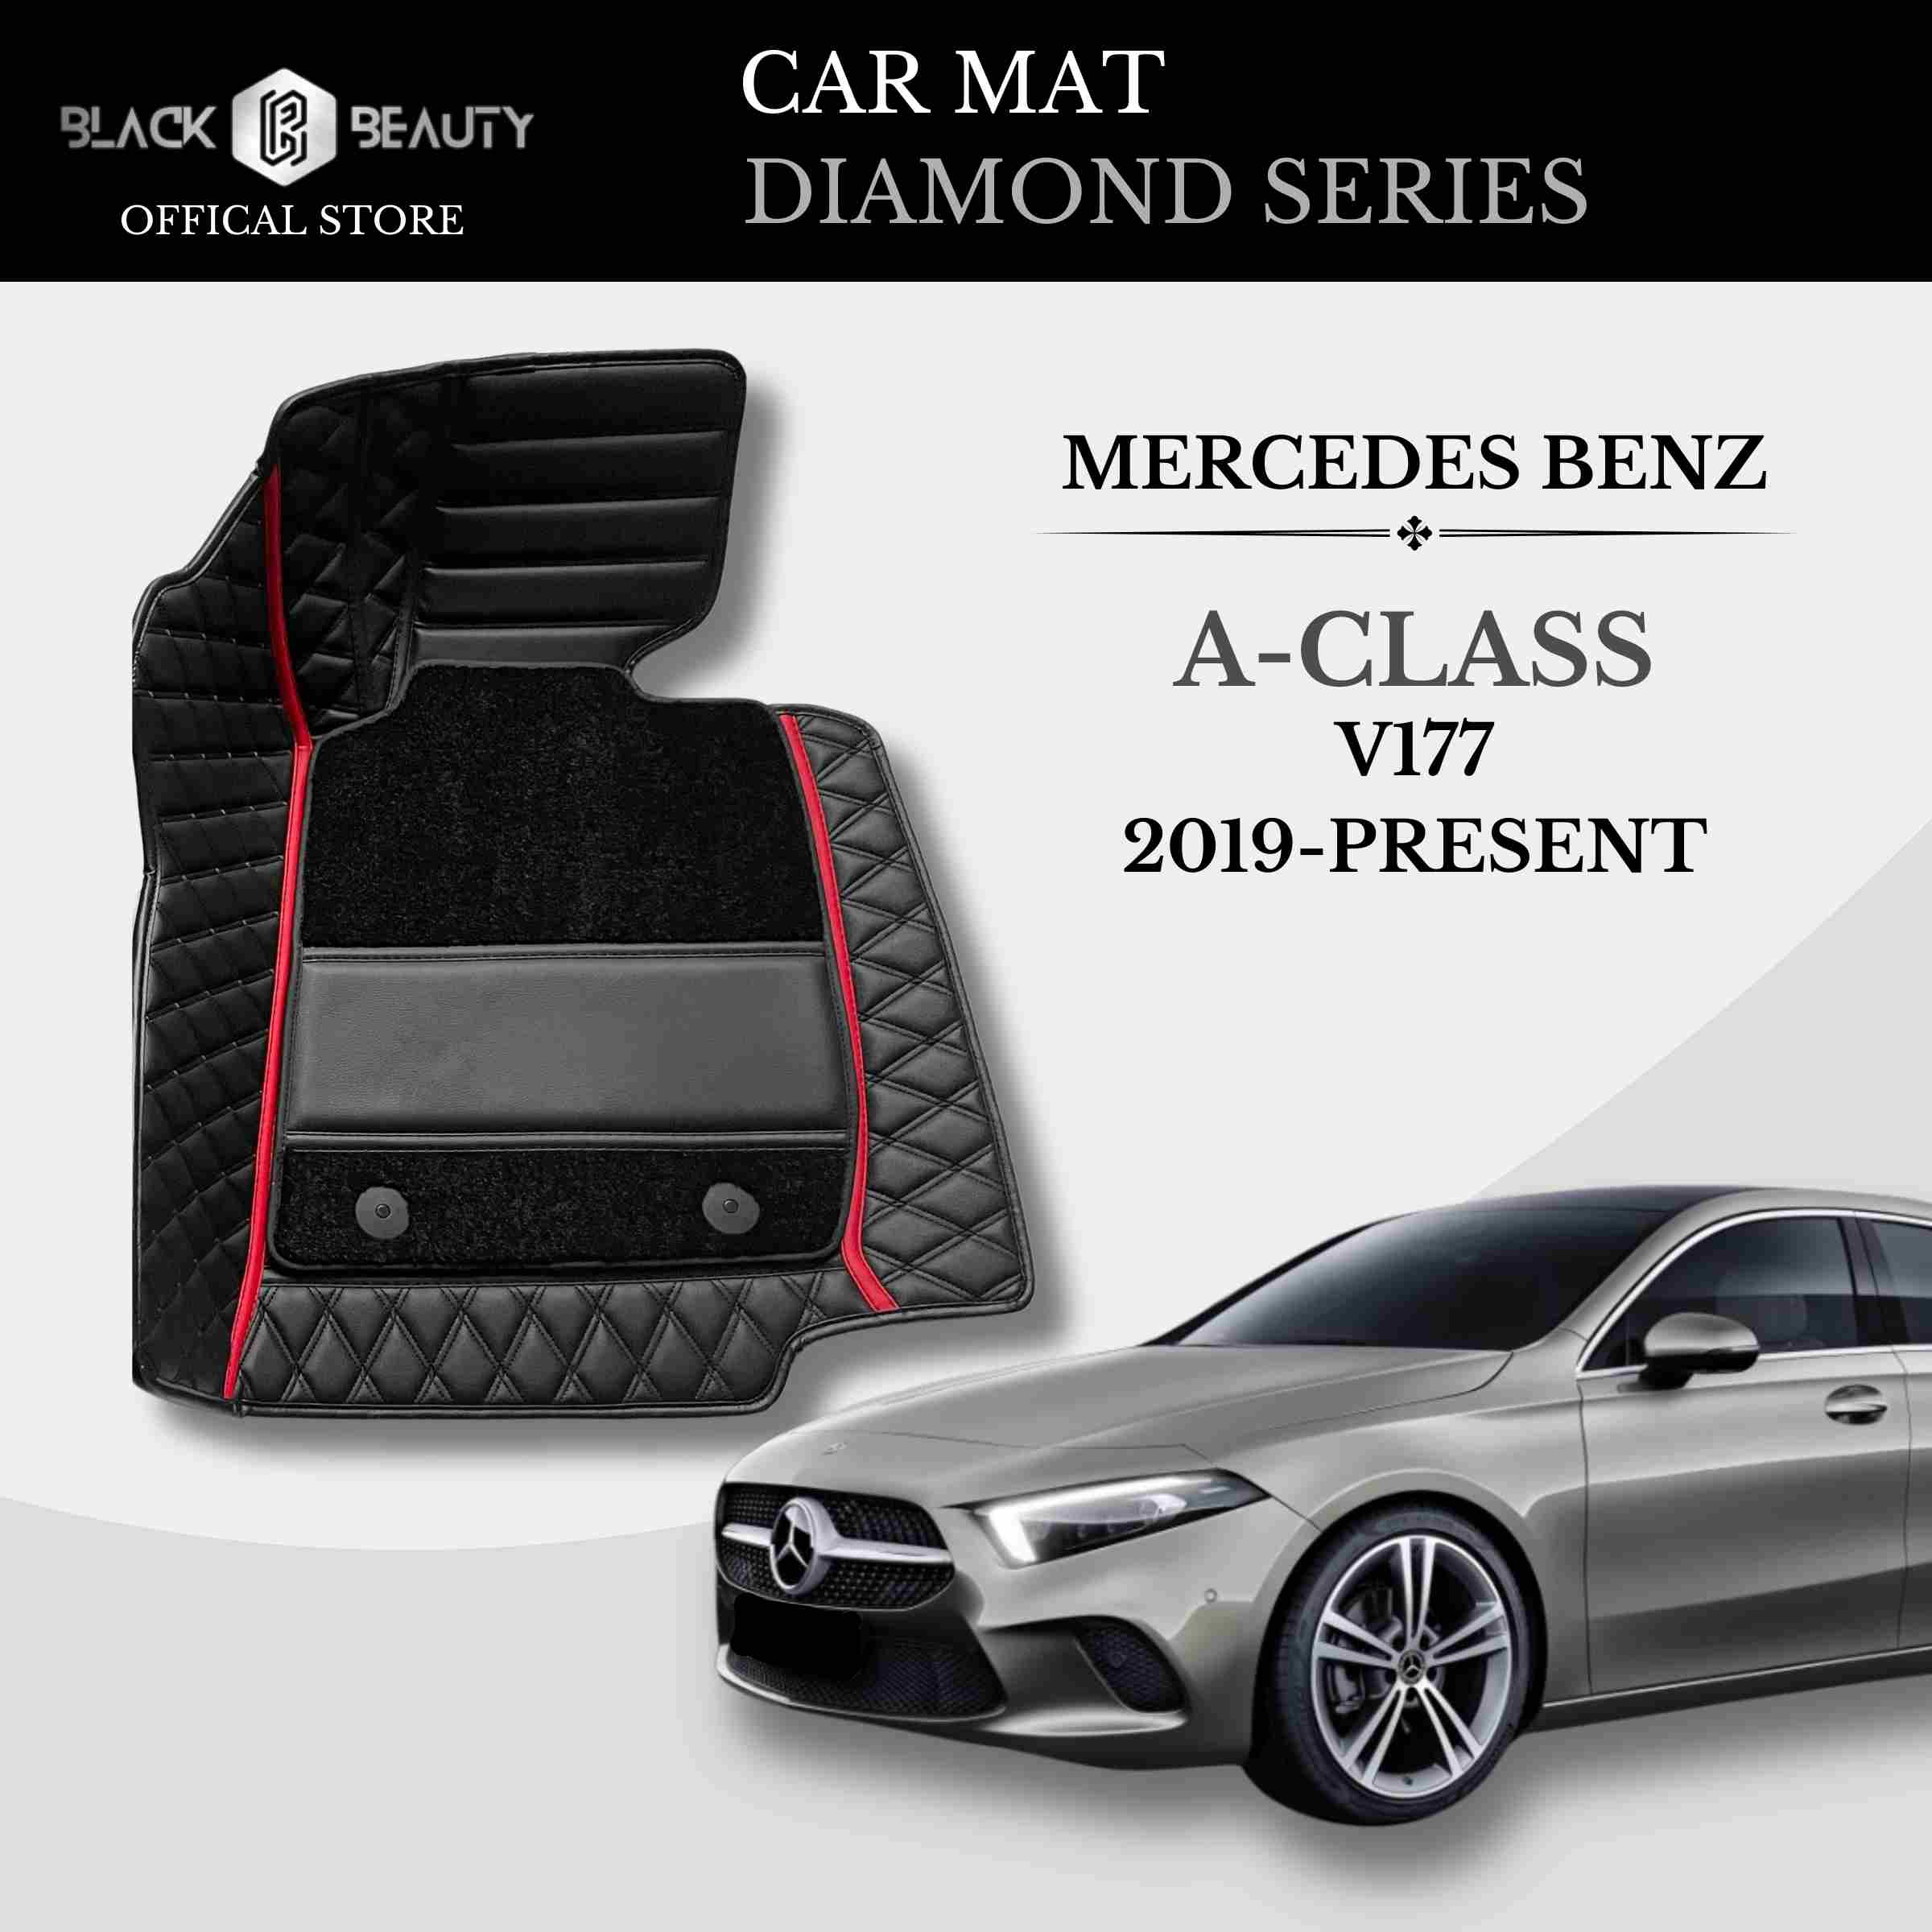 Mercedes Benz A-Class V177 (2019-Present) - Diamond Series Car Mat